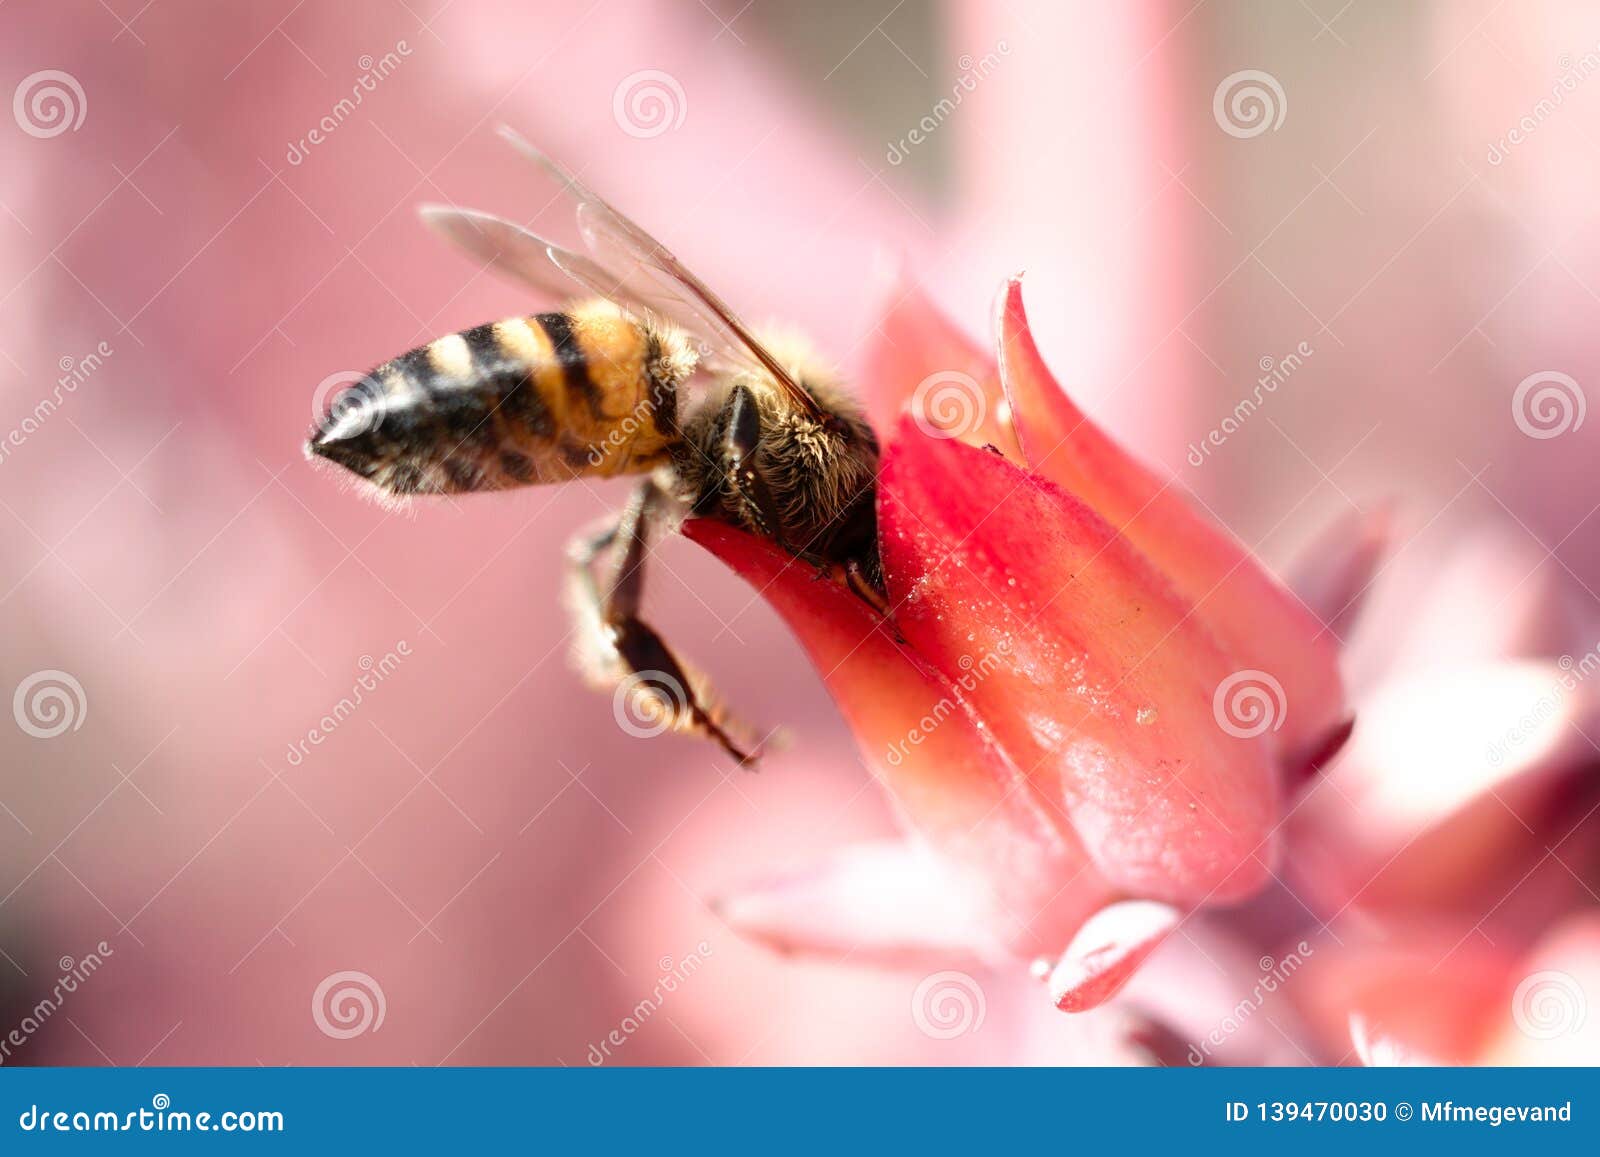 bee on pink flower at unam botanical garden